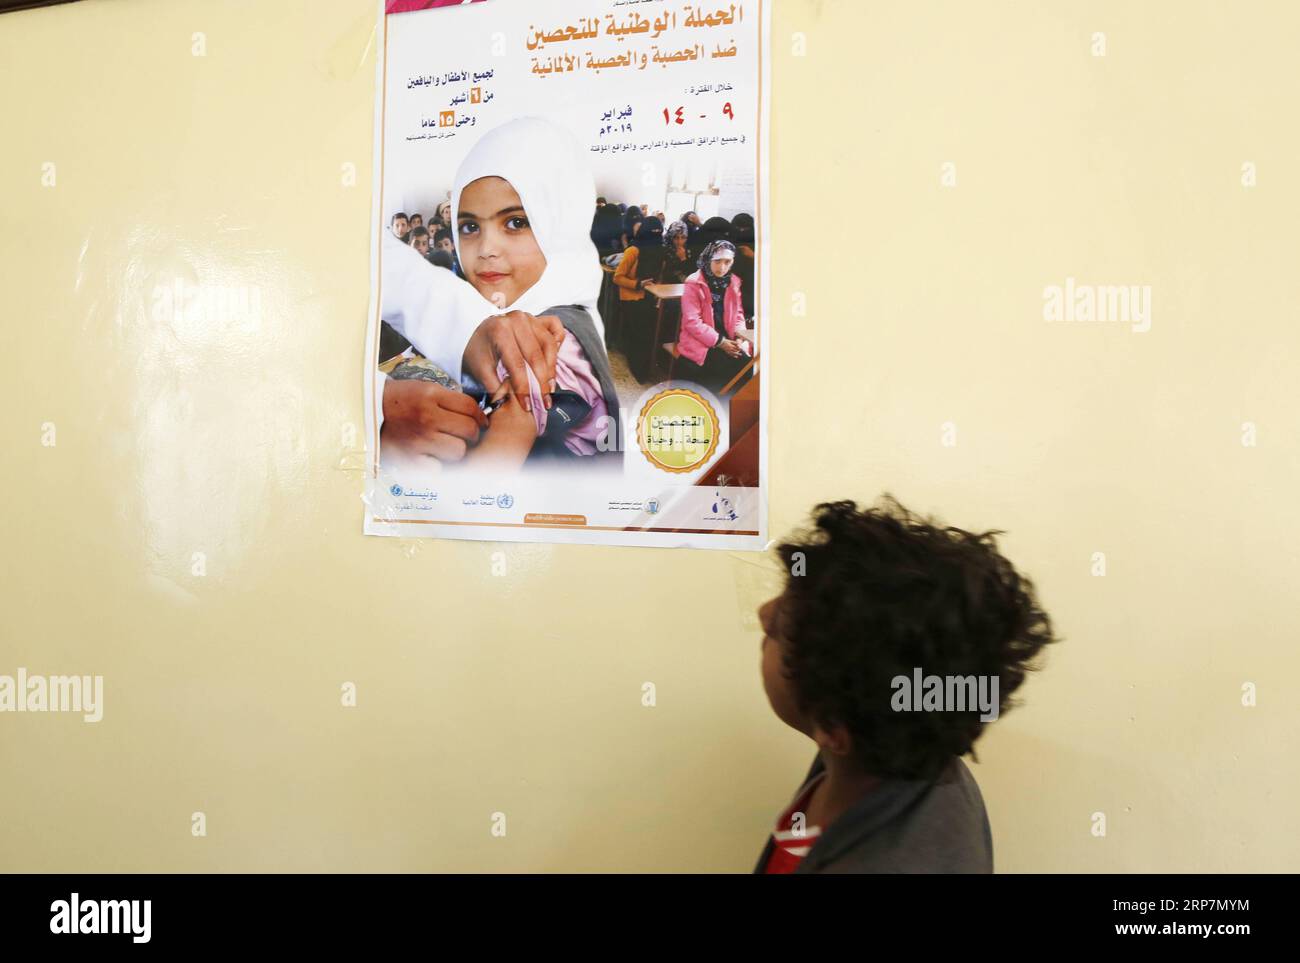 (190209) -- SANAA, 9 febbraio 2019 -- Un bambino guarda un poster di sensibilizzazione prima di ricevere un vaccino anti-morbillo e rosolia in una scuola a Sanaa, Yemen, 9 febbraio 2019. Sabato scorso in Yemen è iniziata una campagna nazionale di immunizzazione contro i morbilli e la rosolia, che durerà sei giorni. La campagna si rivolge ai bambini yemeniti dai sei mesi ai 15 anni, secondo i media locali. Mohammed) YEMEN-SANAA-MORBILLO-ROSOLIA-VACCINAZIONE nieyunpeng PUBLICATIONxNOTxINxCHN Foto Stock